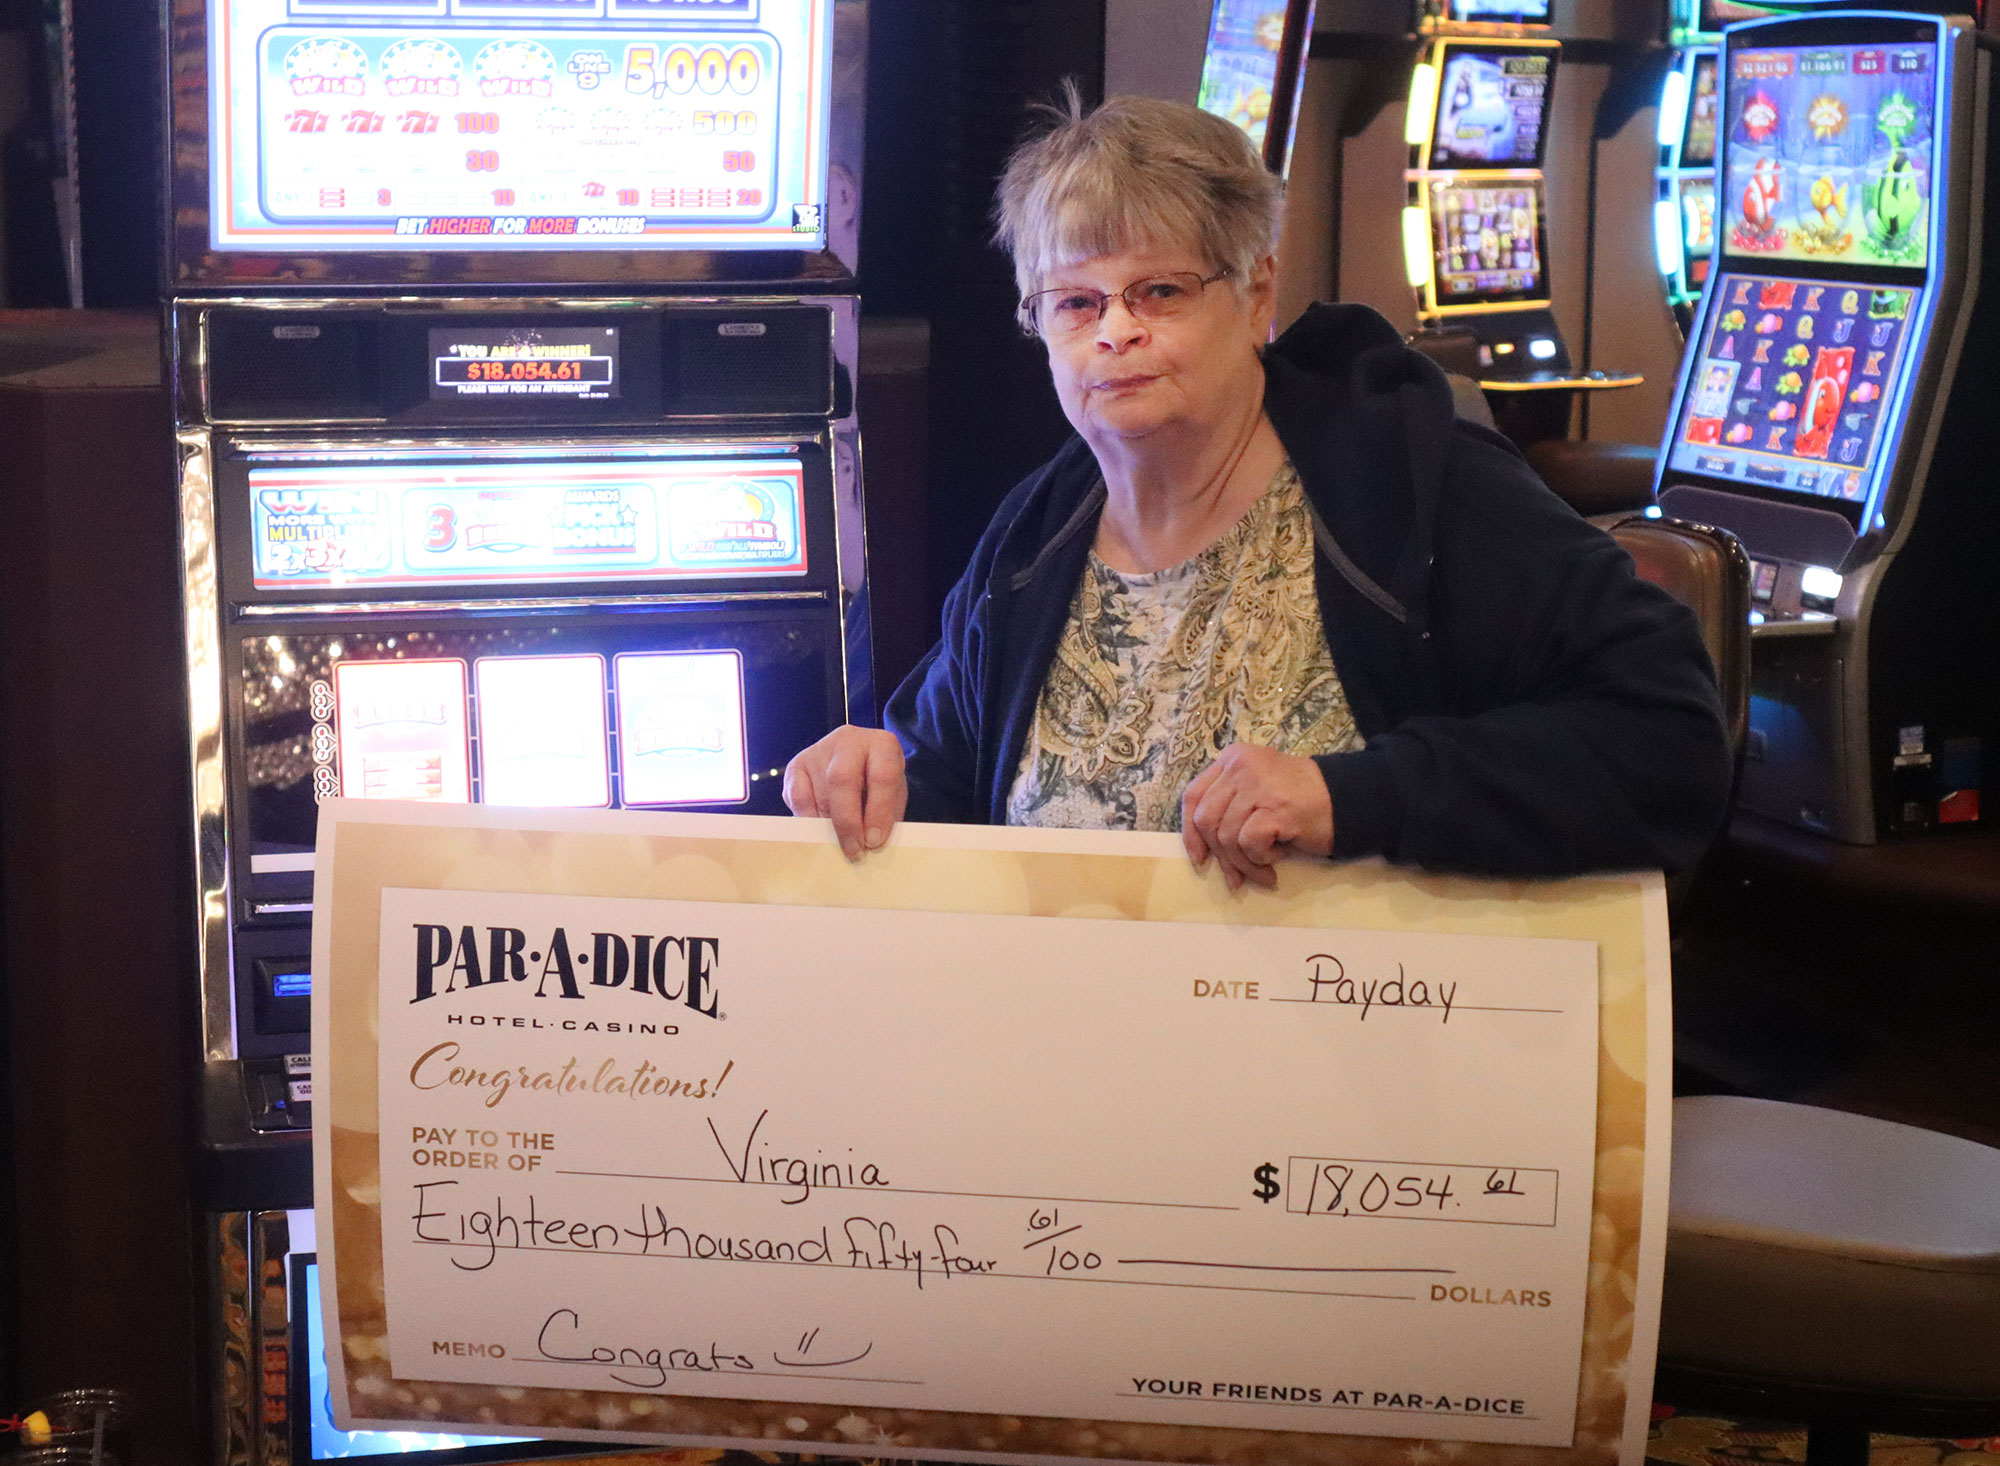 Virginia F. Winner at Par-A-Dice Hotel Casino